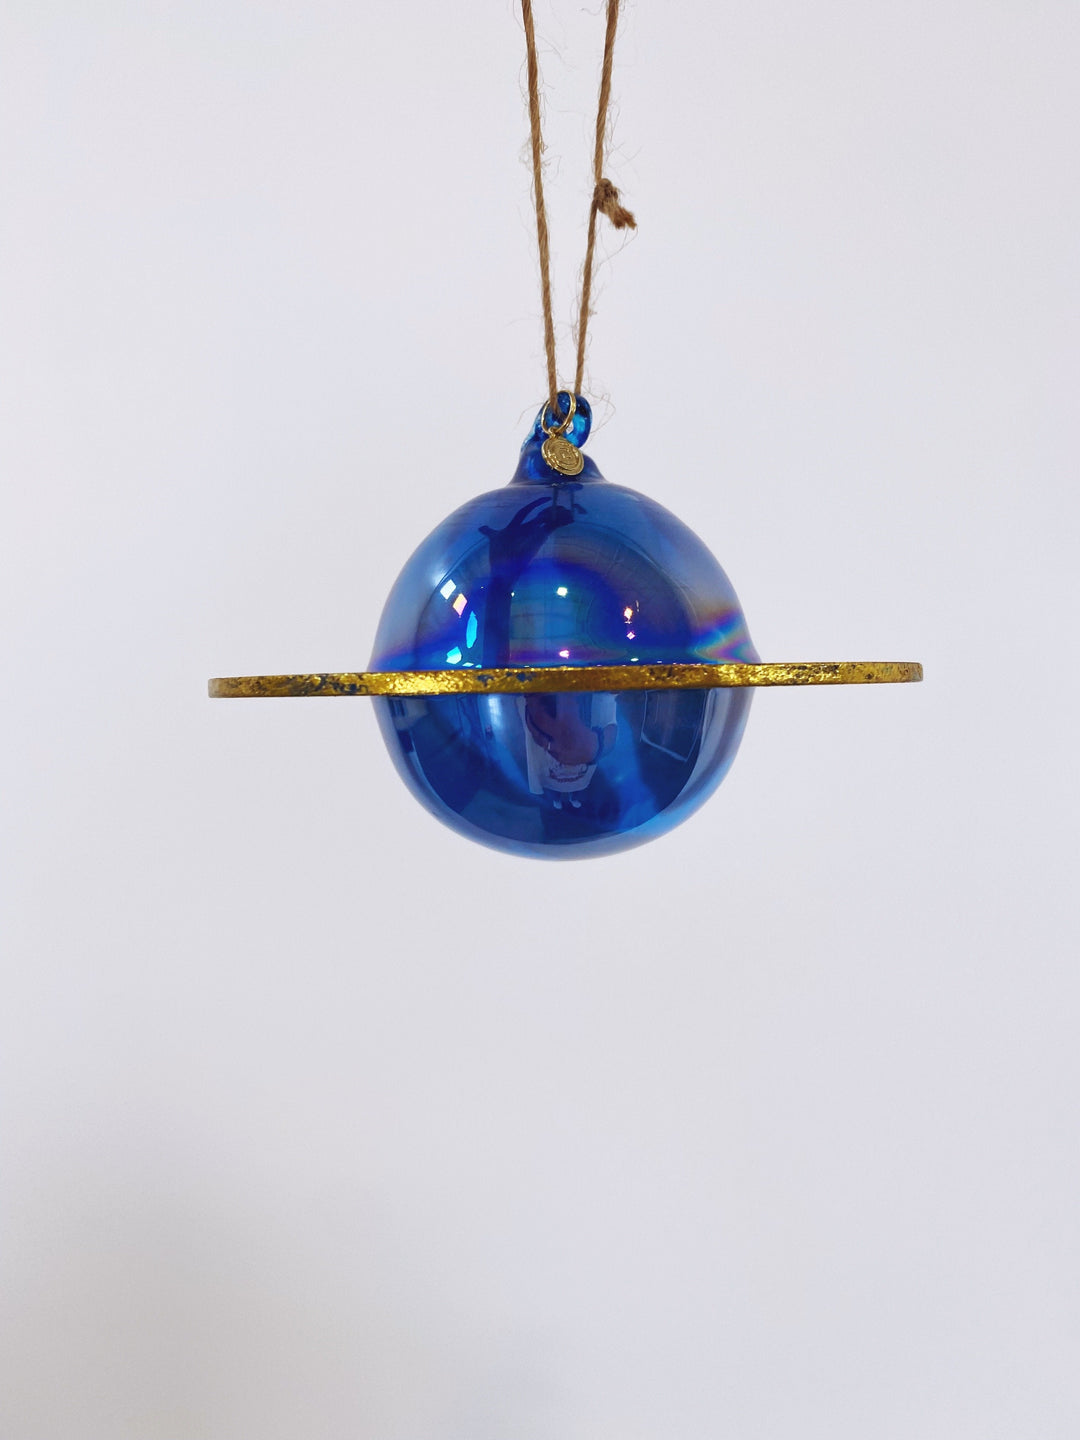 PLANET GLASS ORNAMENT Glitterville Christmas Ornament BLUE PLANET Bonjour Fete - Party Supplies